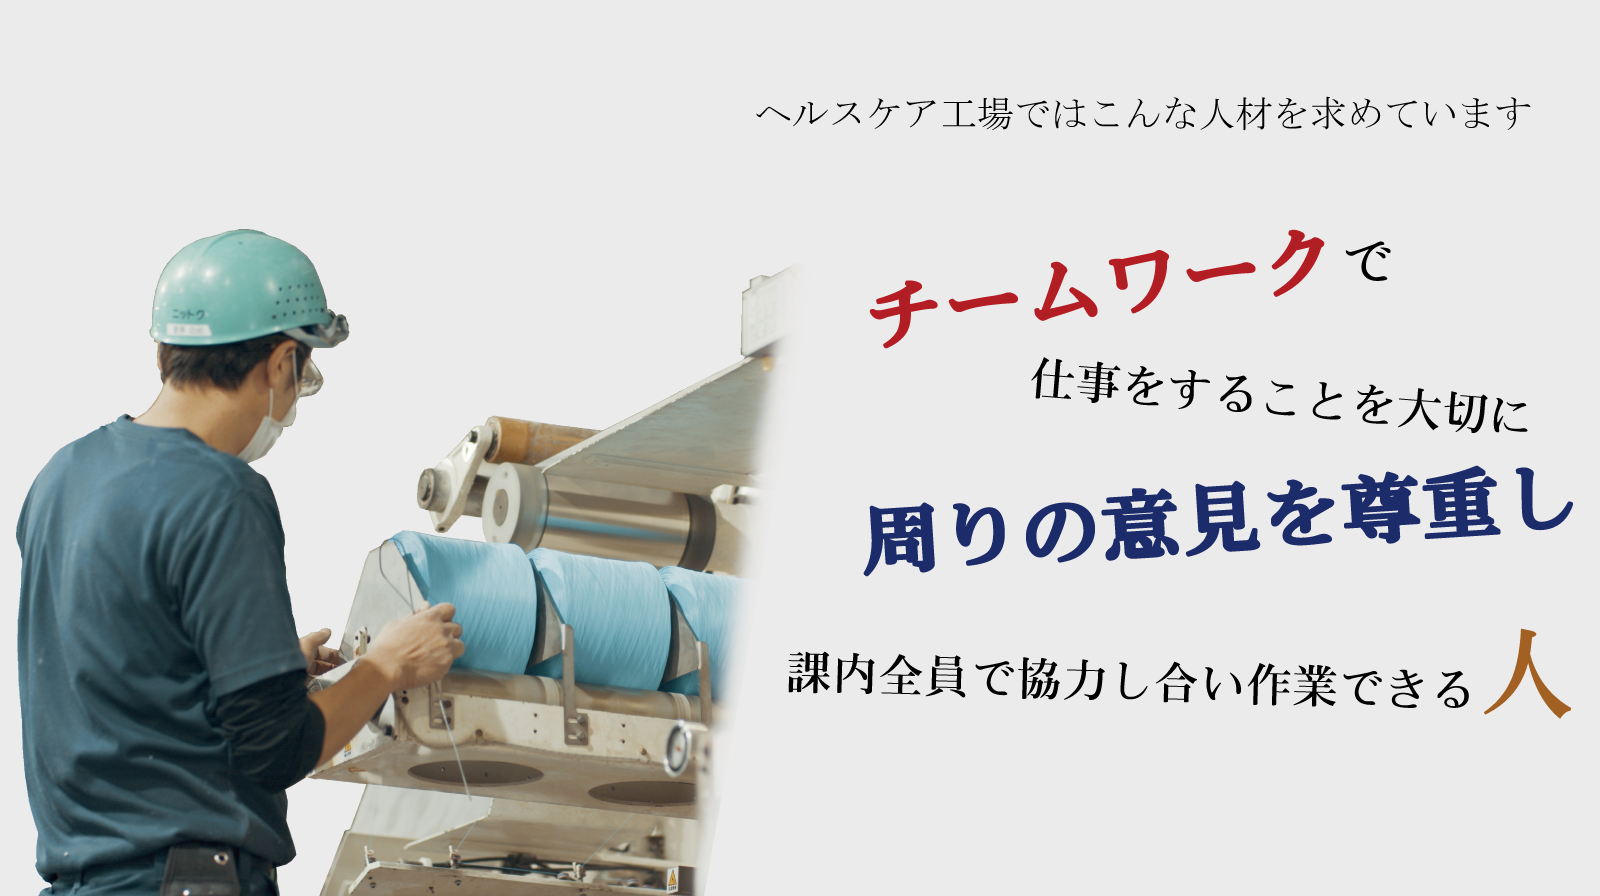 ヘルスケア工場求人情報-静岡県富士市の製紙会社ニットク株式会社｜紙の街富士市で原紙加工・コーヒーフィルター・ナプキンなどの製造をしています｜フルPR